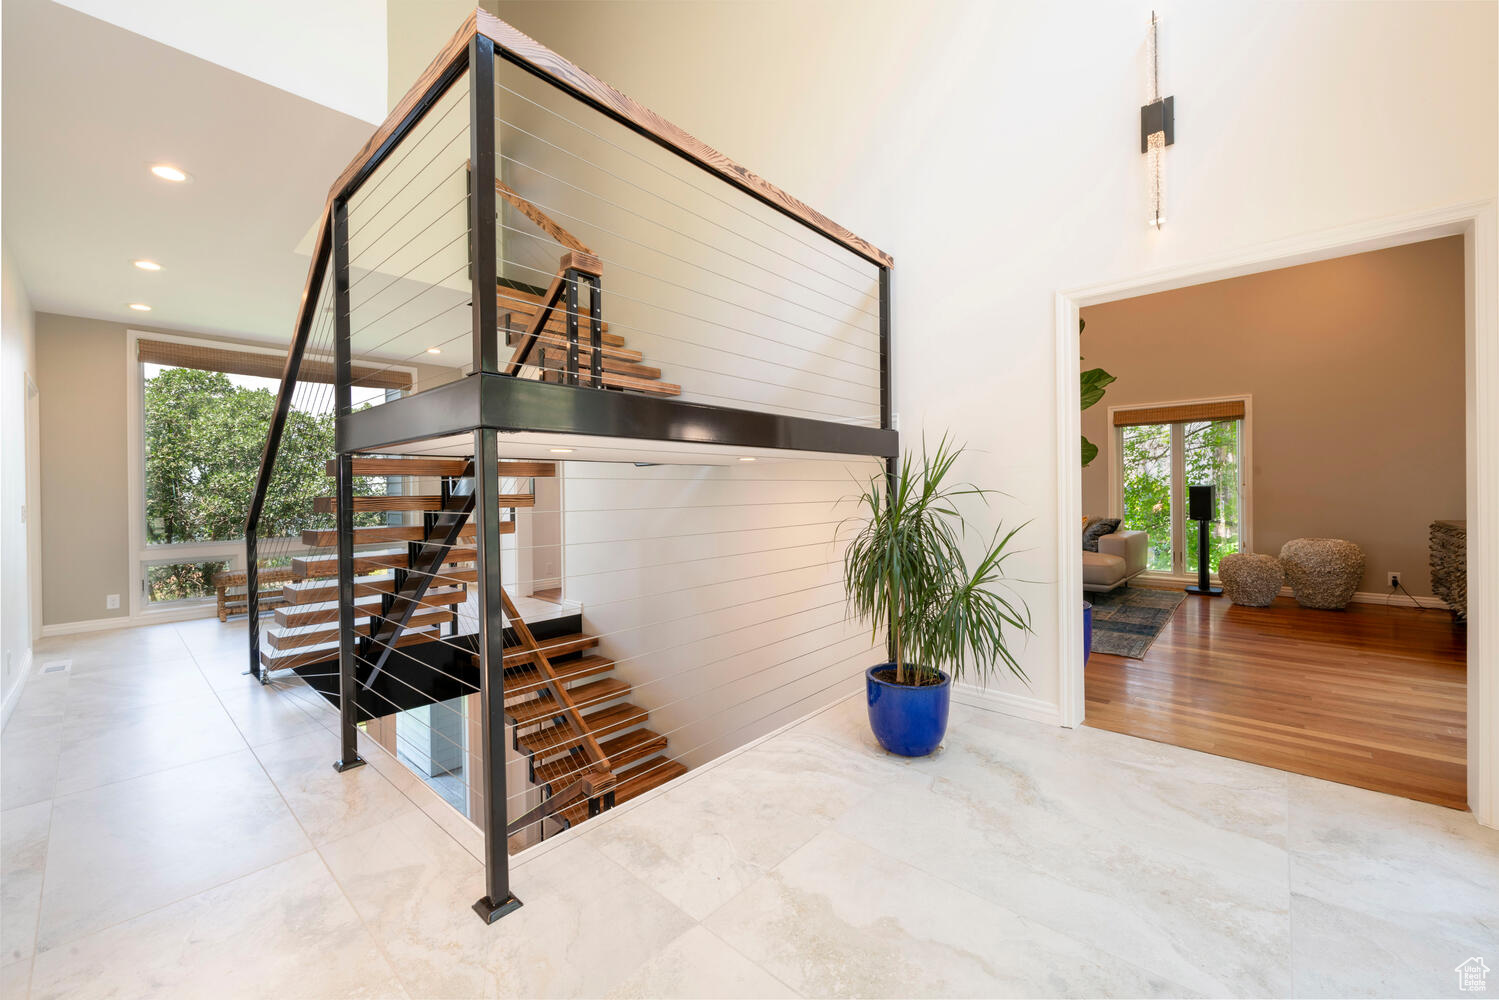 Stairway featuring custom wood flooring